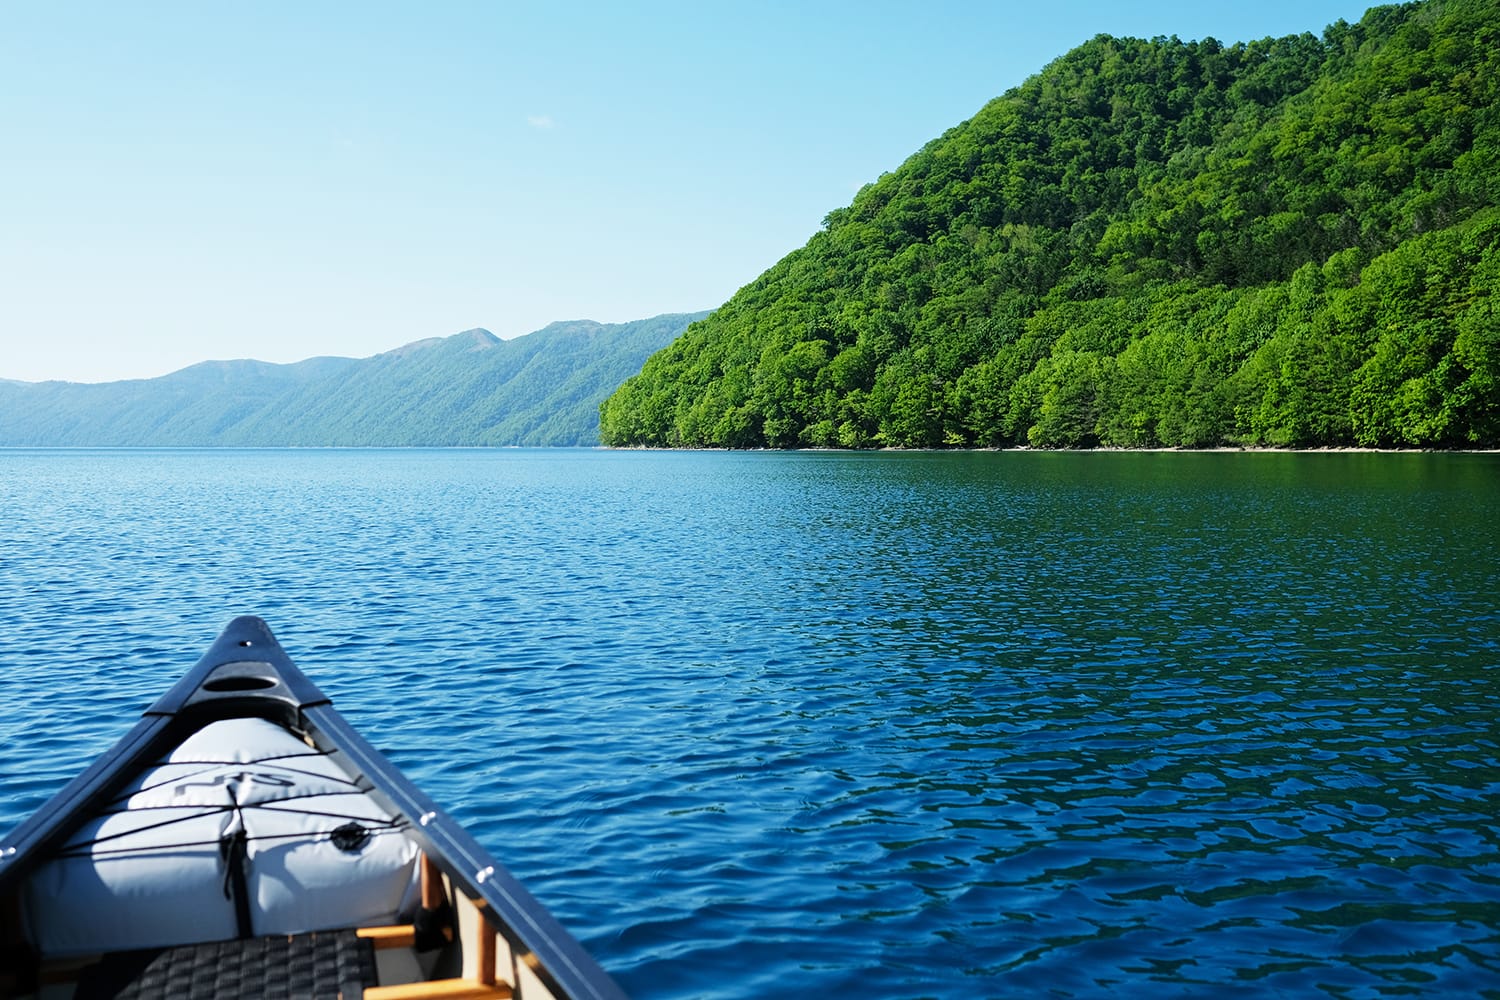 夏の新緑が濃く快晴青空の支笏湖でカナディアンカヌーを漕ぐ